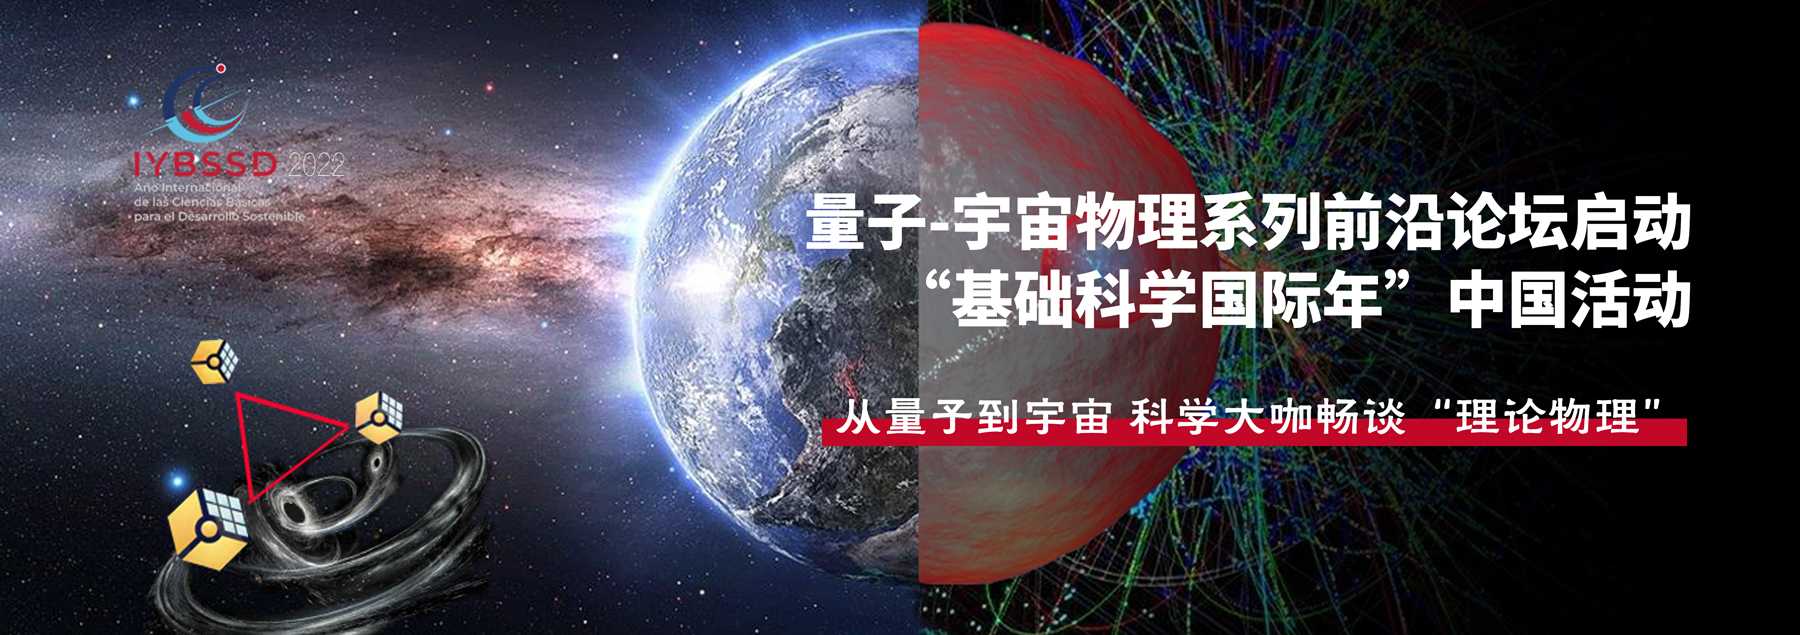 量子-宇宙物理系列前沿论坛启动 “基础科学国际年”中国活动